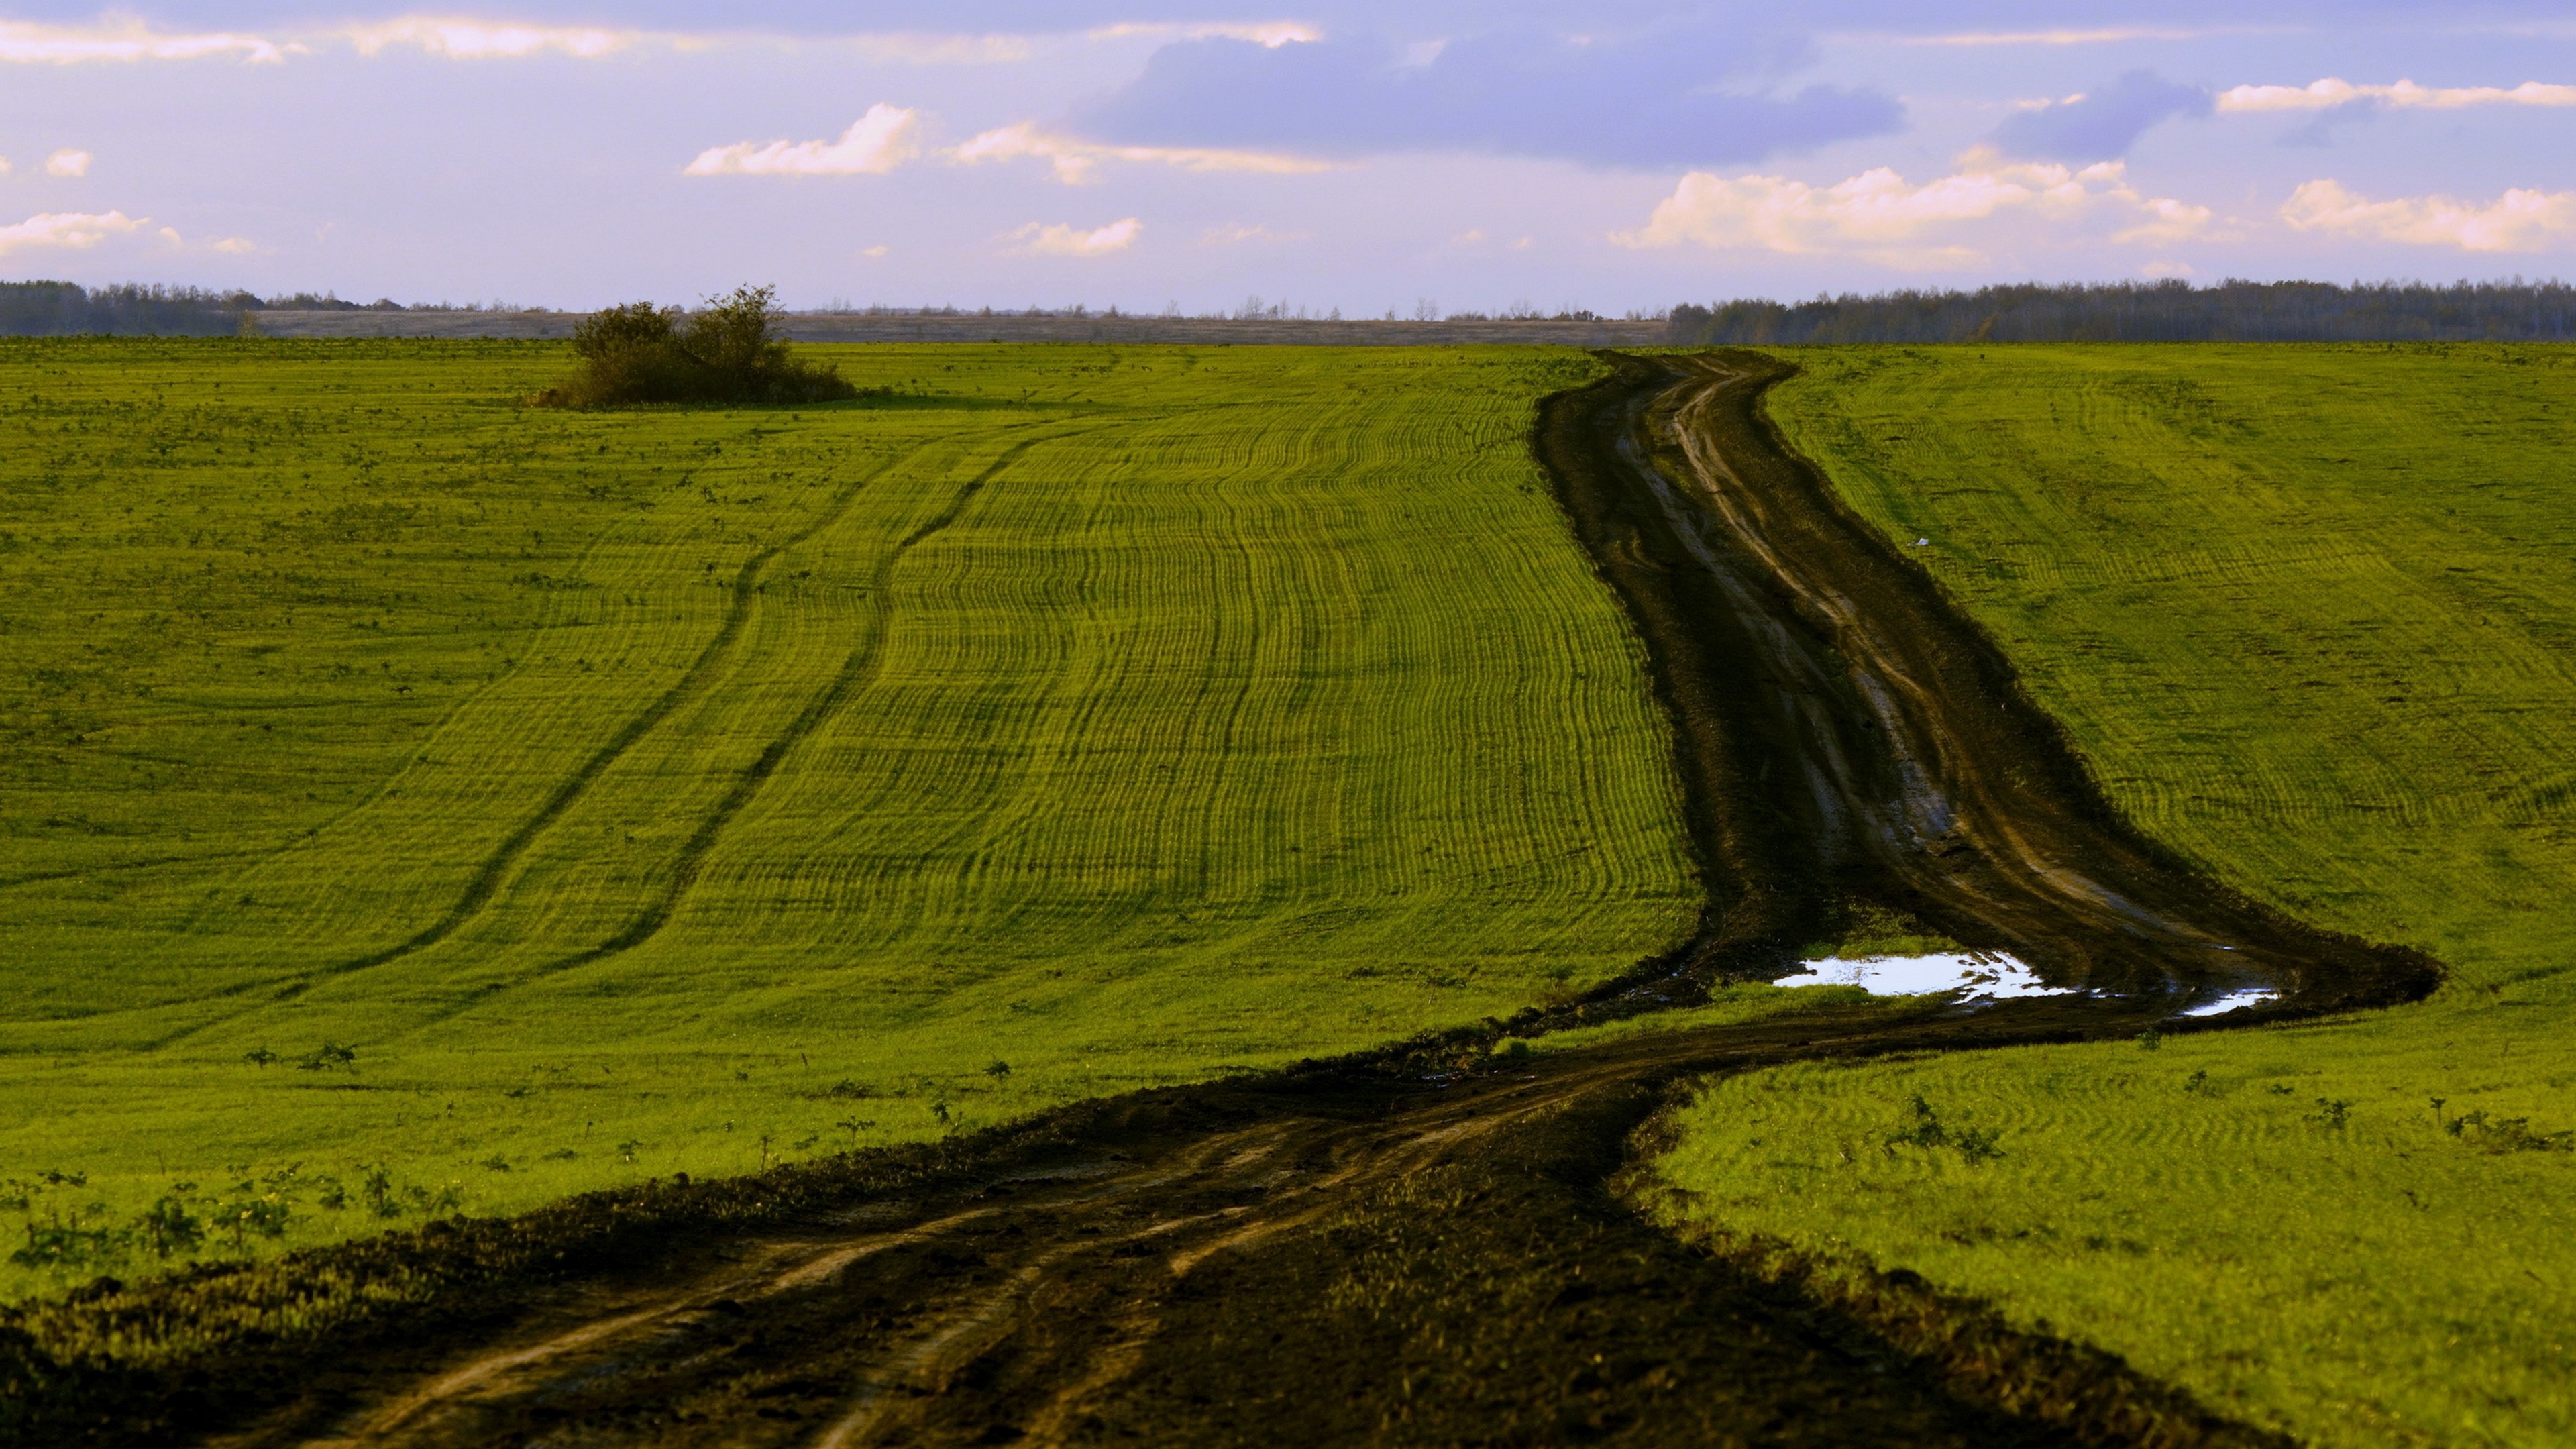 Степи луга и болота. Степи вспаханные поля Донбасса. Степь пашня. Сельскохозяйственные поля. Равнина дорогая.